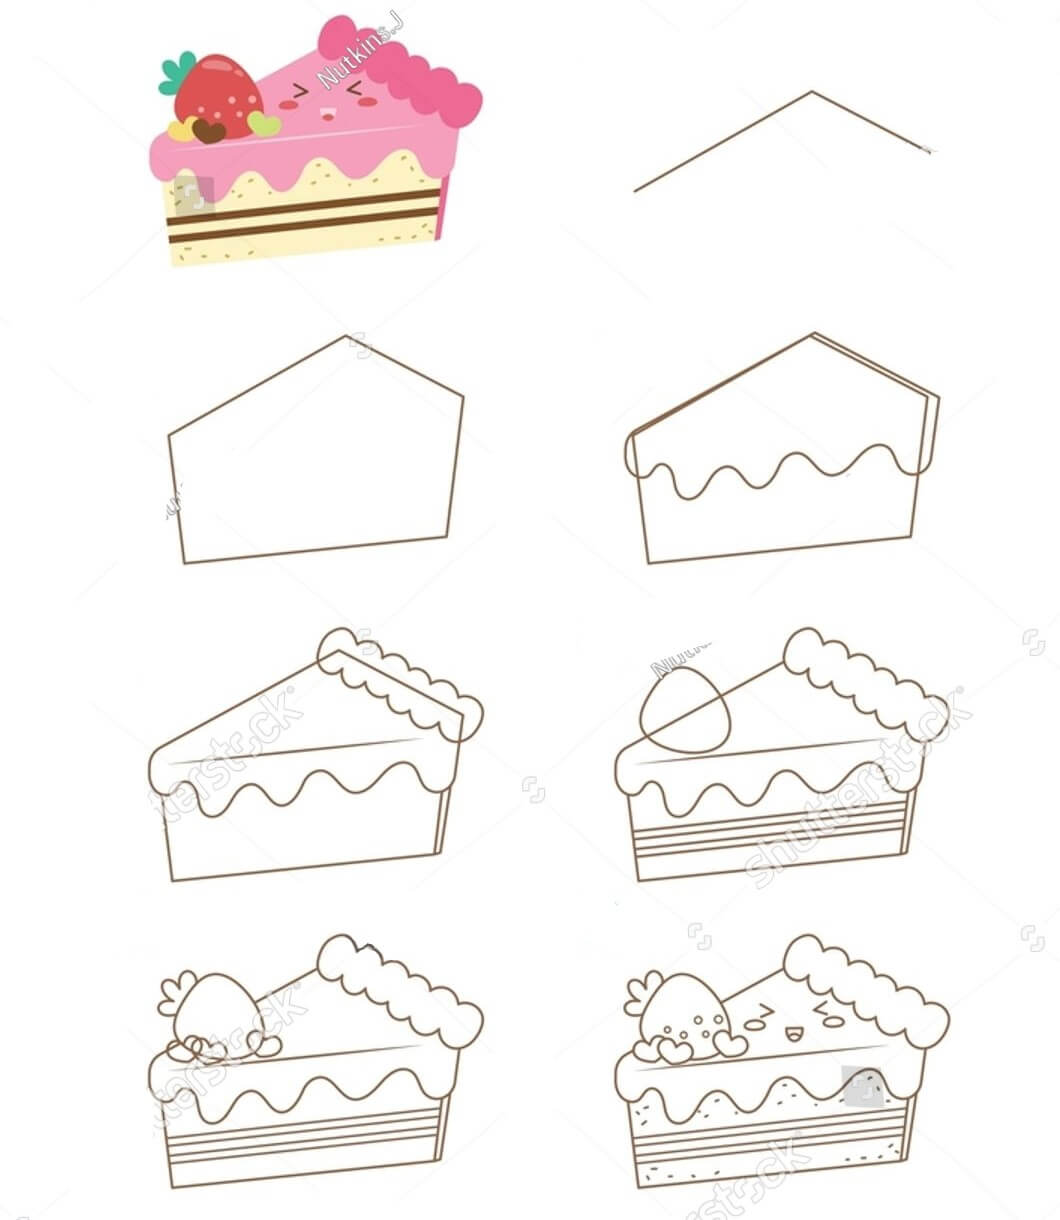 Einfache Kuchenzeichnung (3) zeichnen ideen